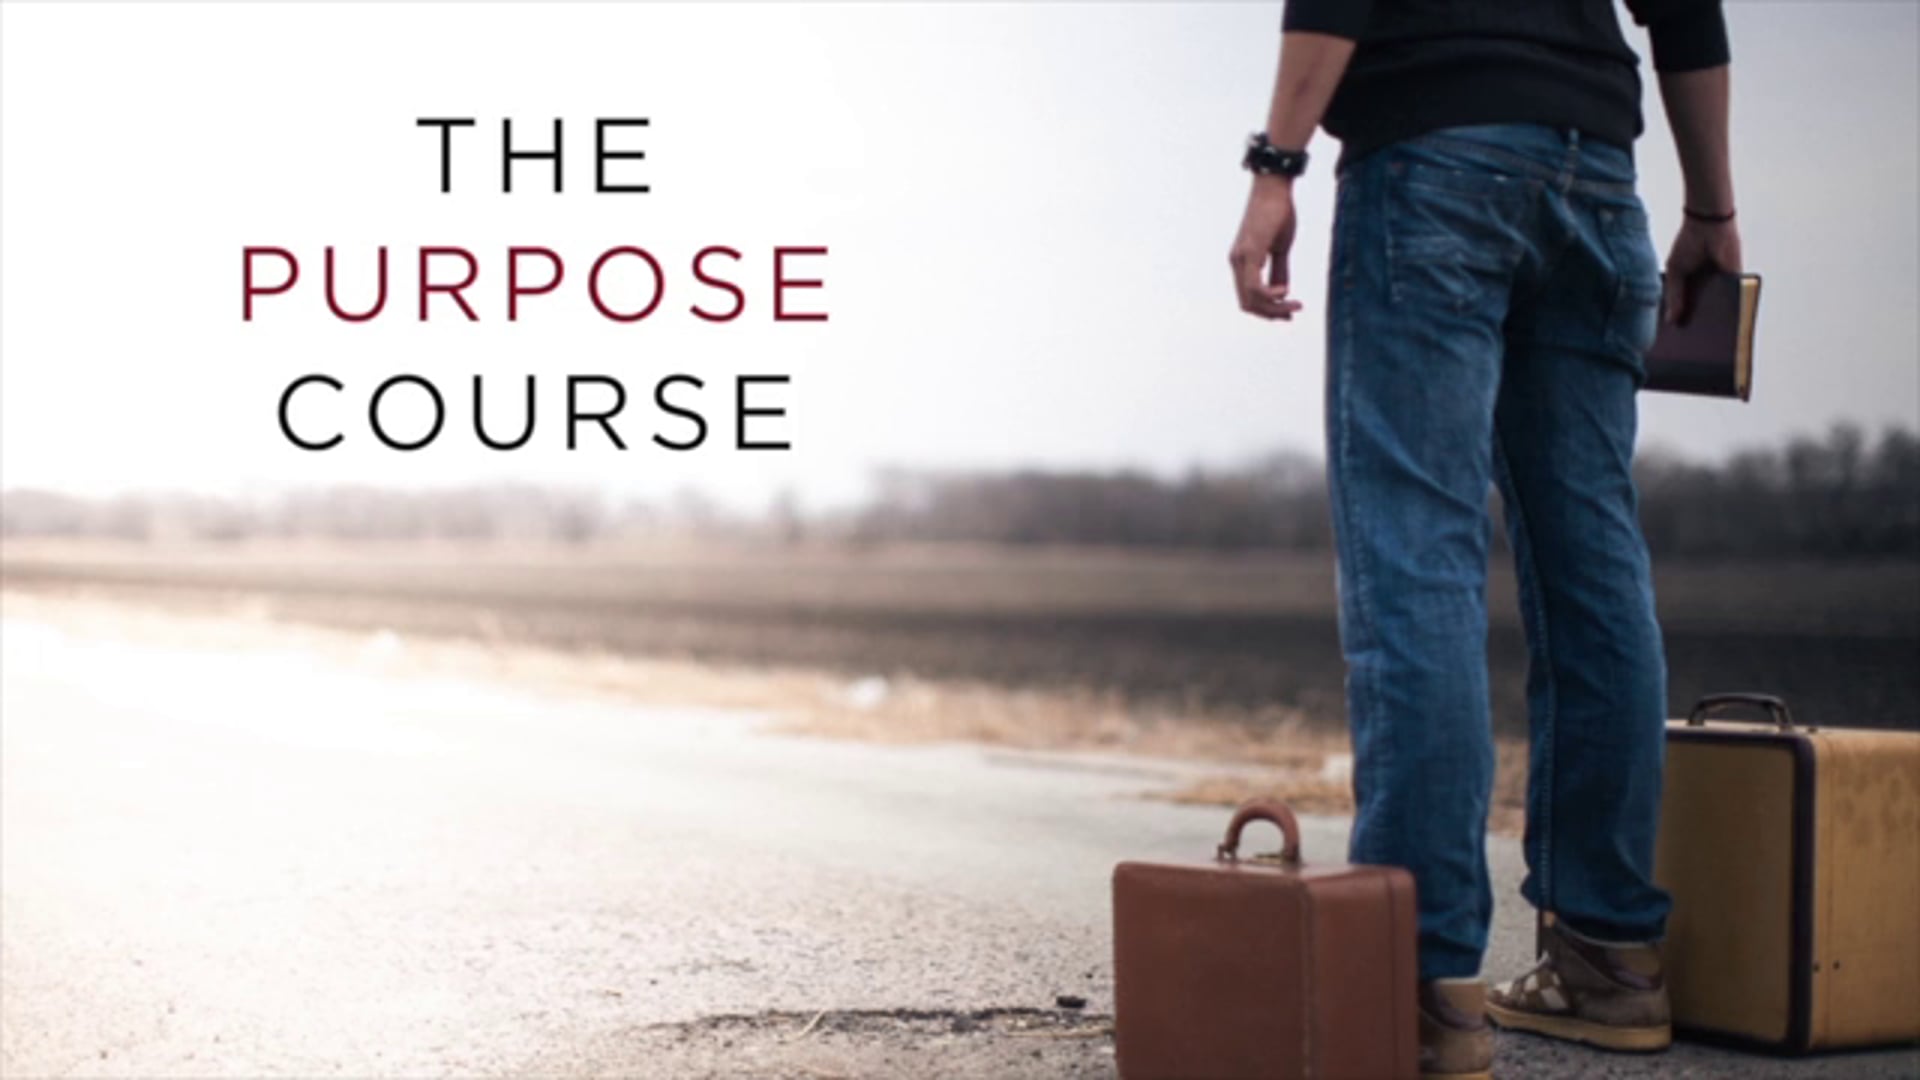 The Purpose Course 3 - God's Purpose